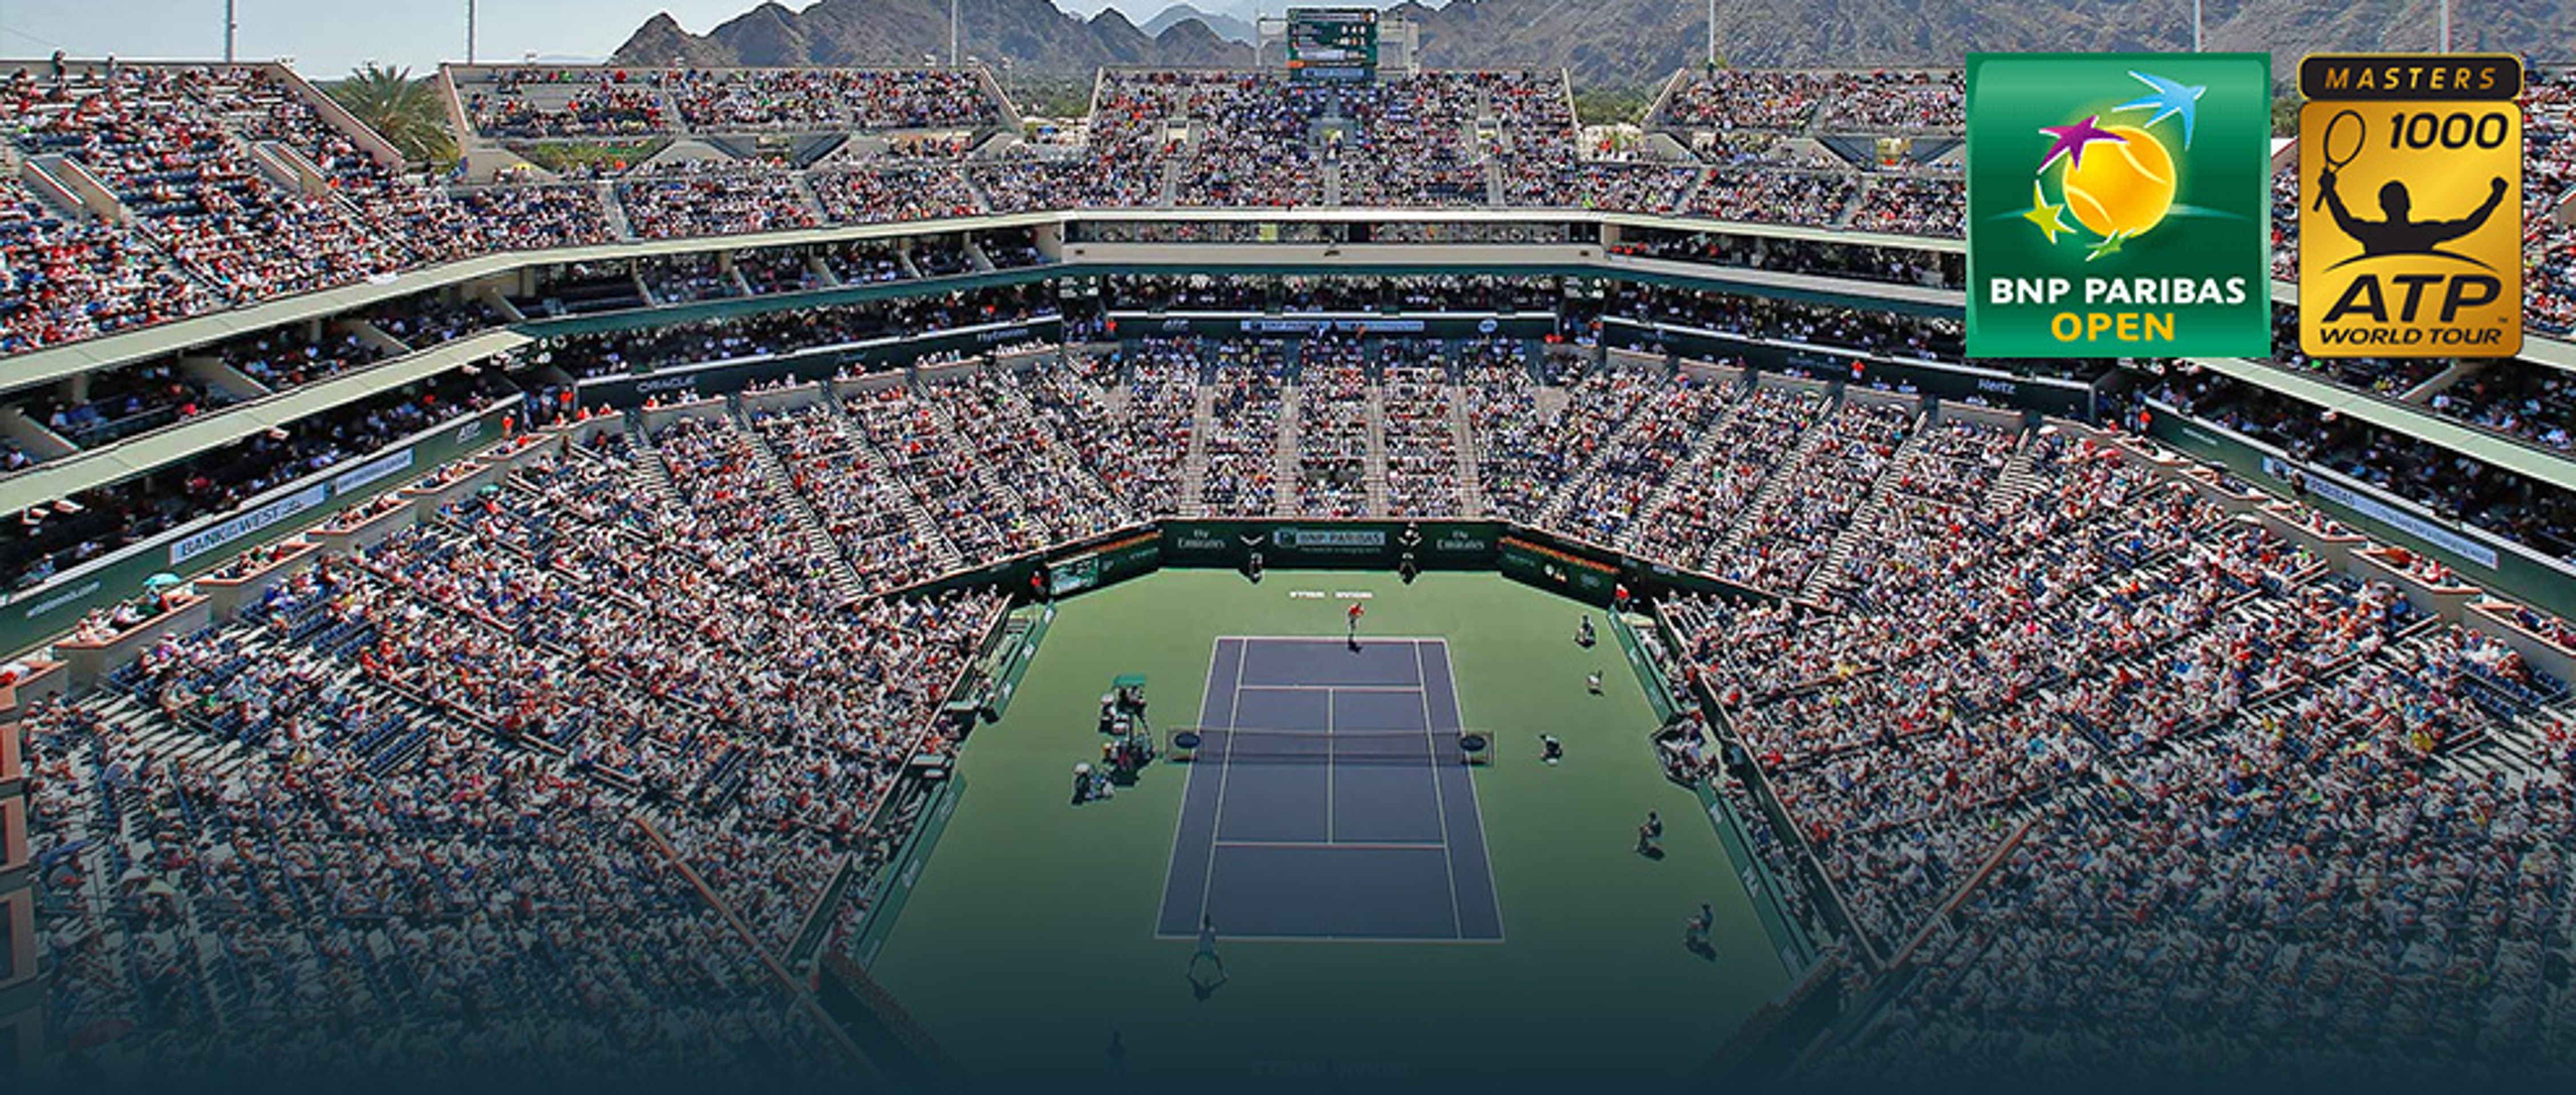 ATP World Tour Masters 1000 – Indian Wells - splash - GALERIE: Stavba roku 2013 - zvláštní ceny (5/5)